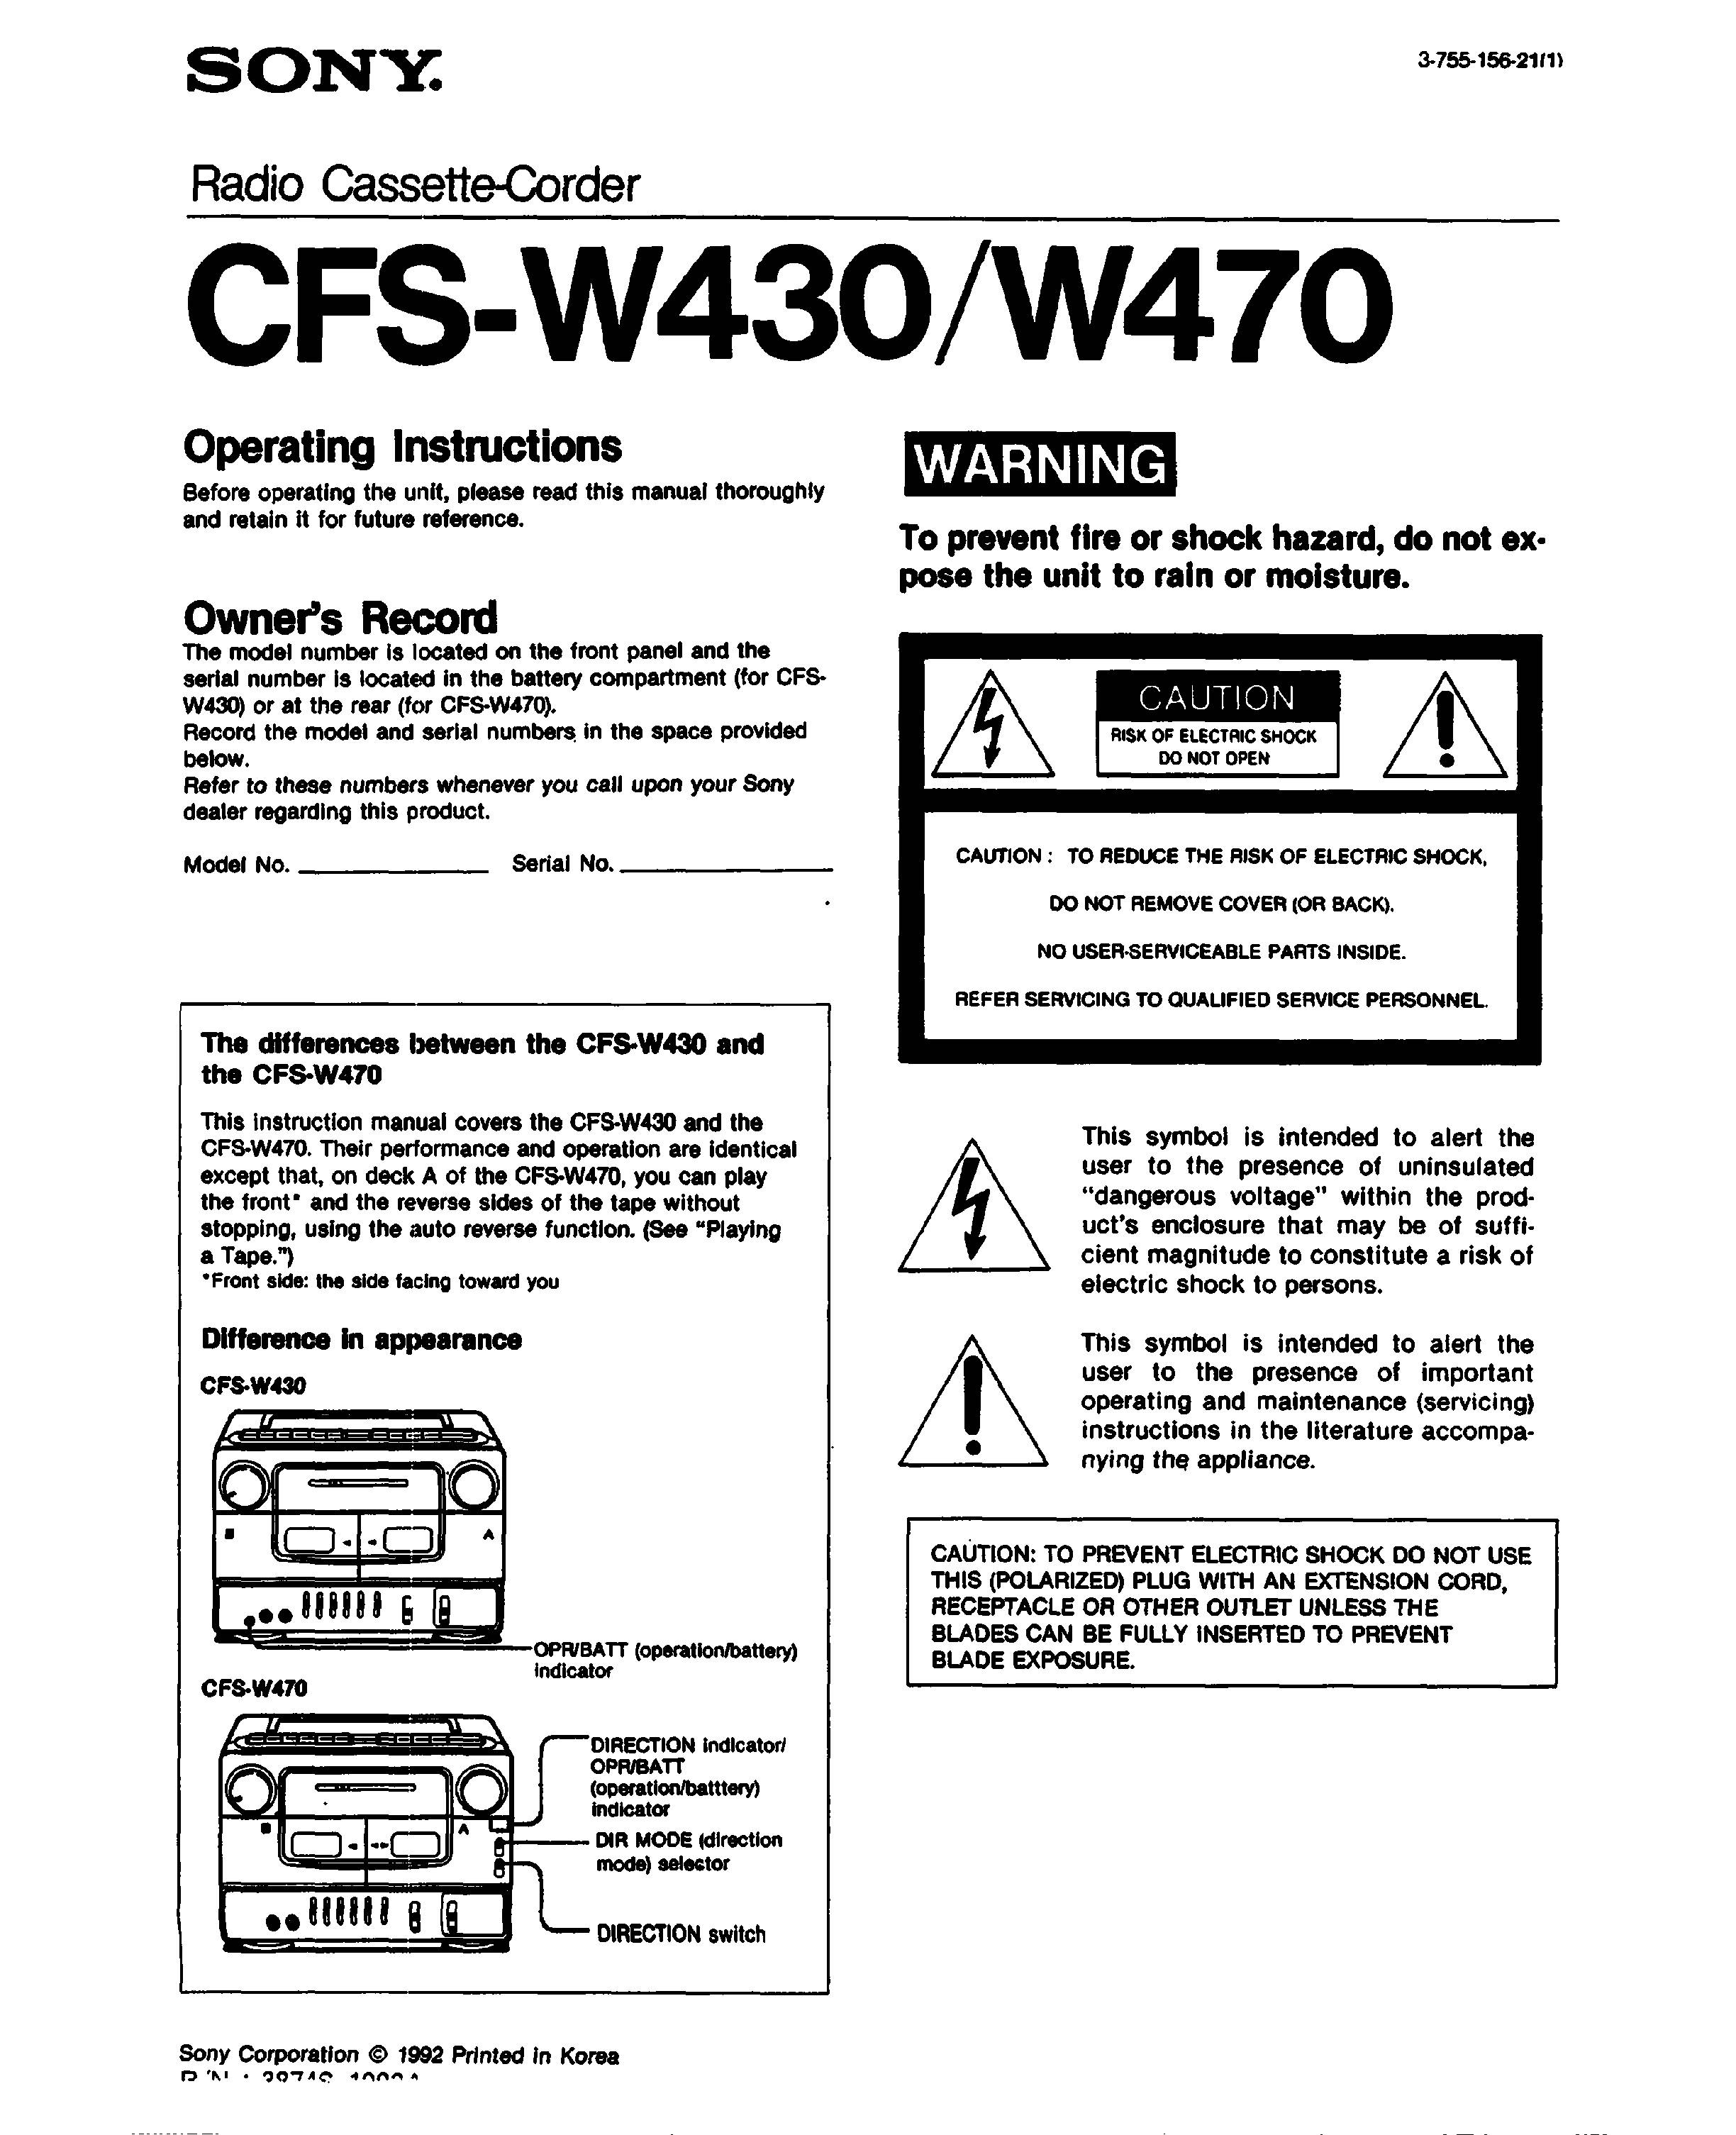 Sony CFS-W470